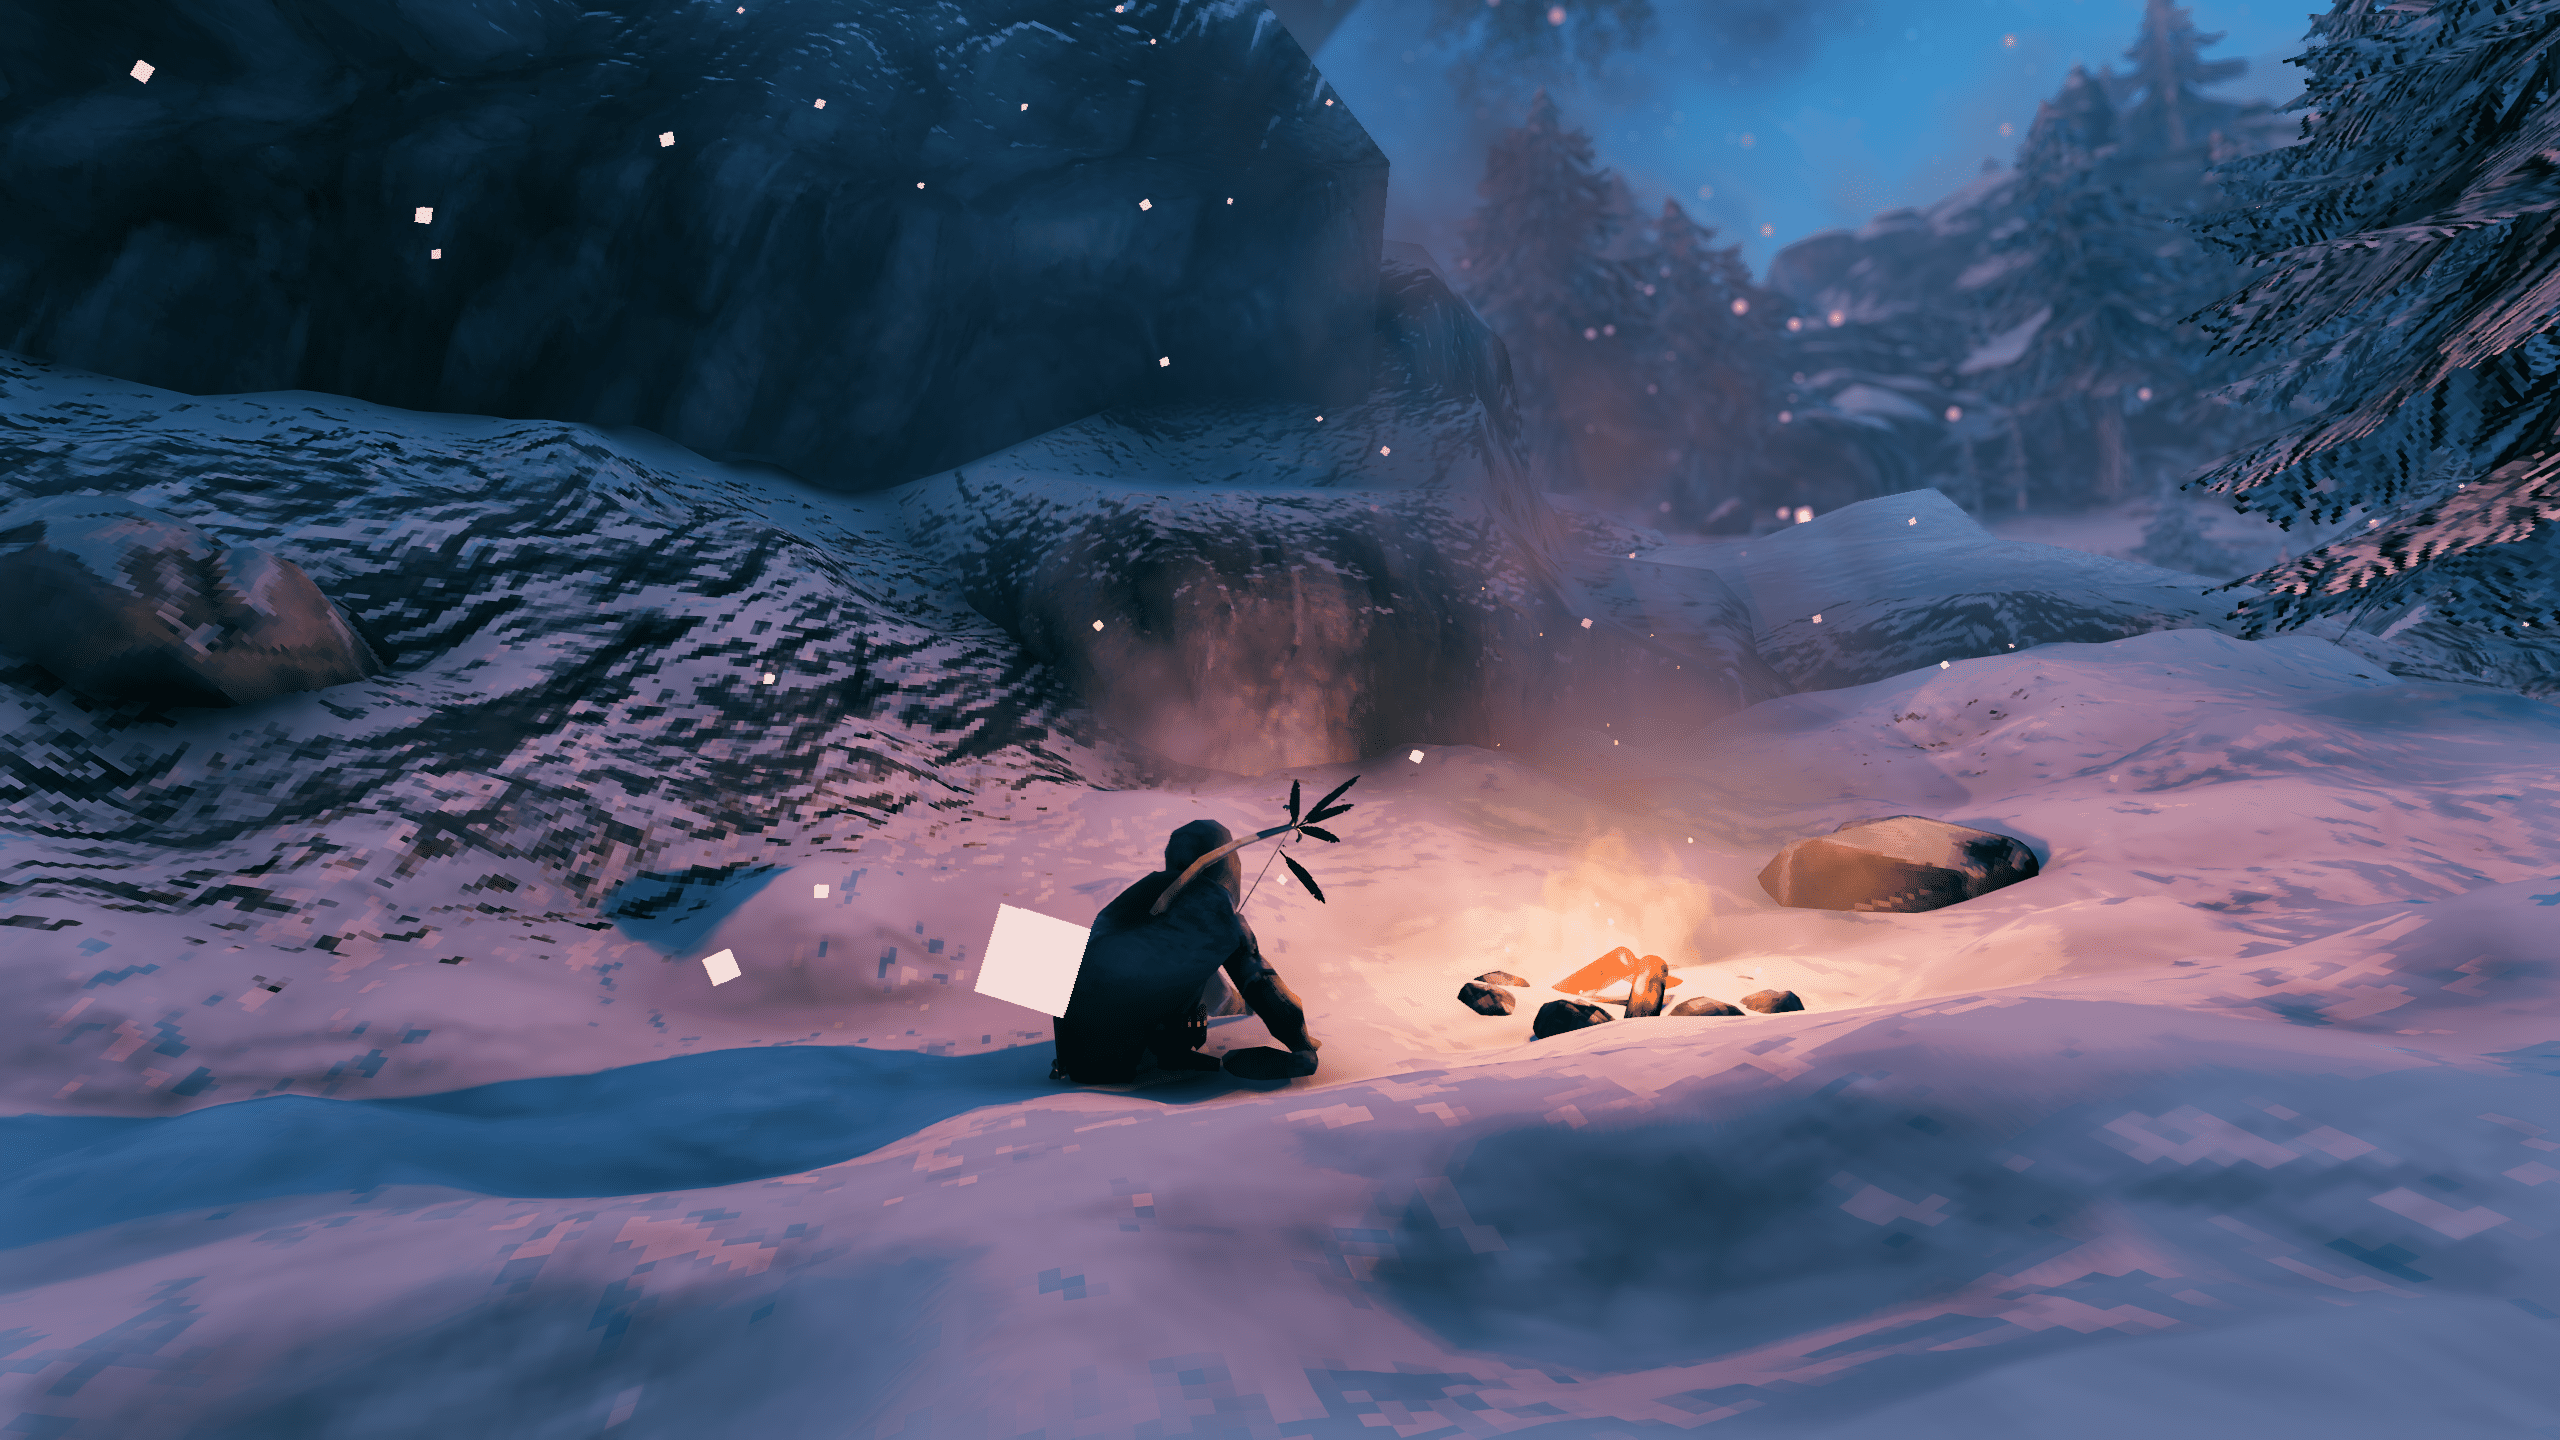 Postava Valheima odpočívá u táboráku ve sněhu